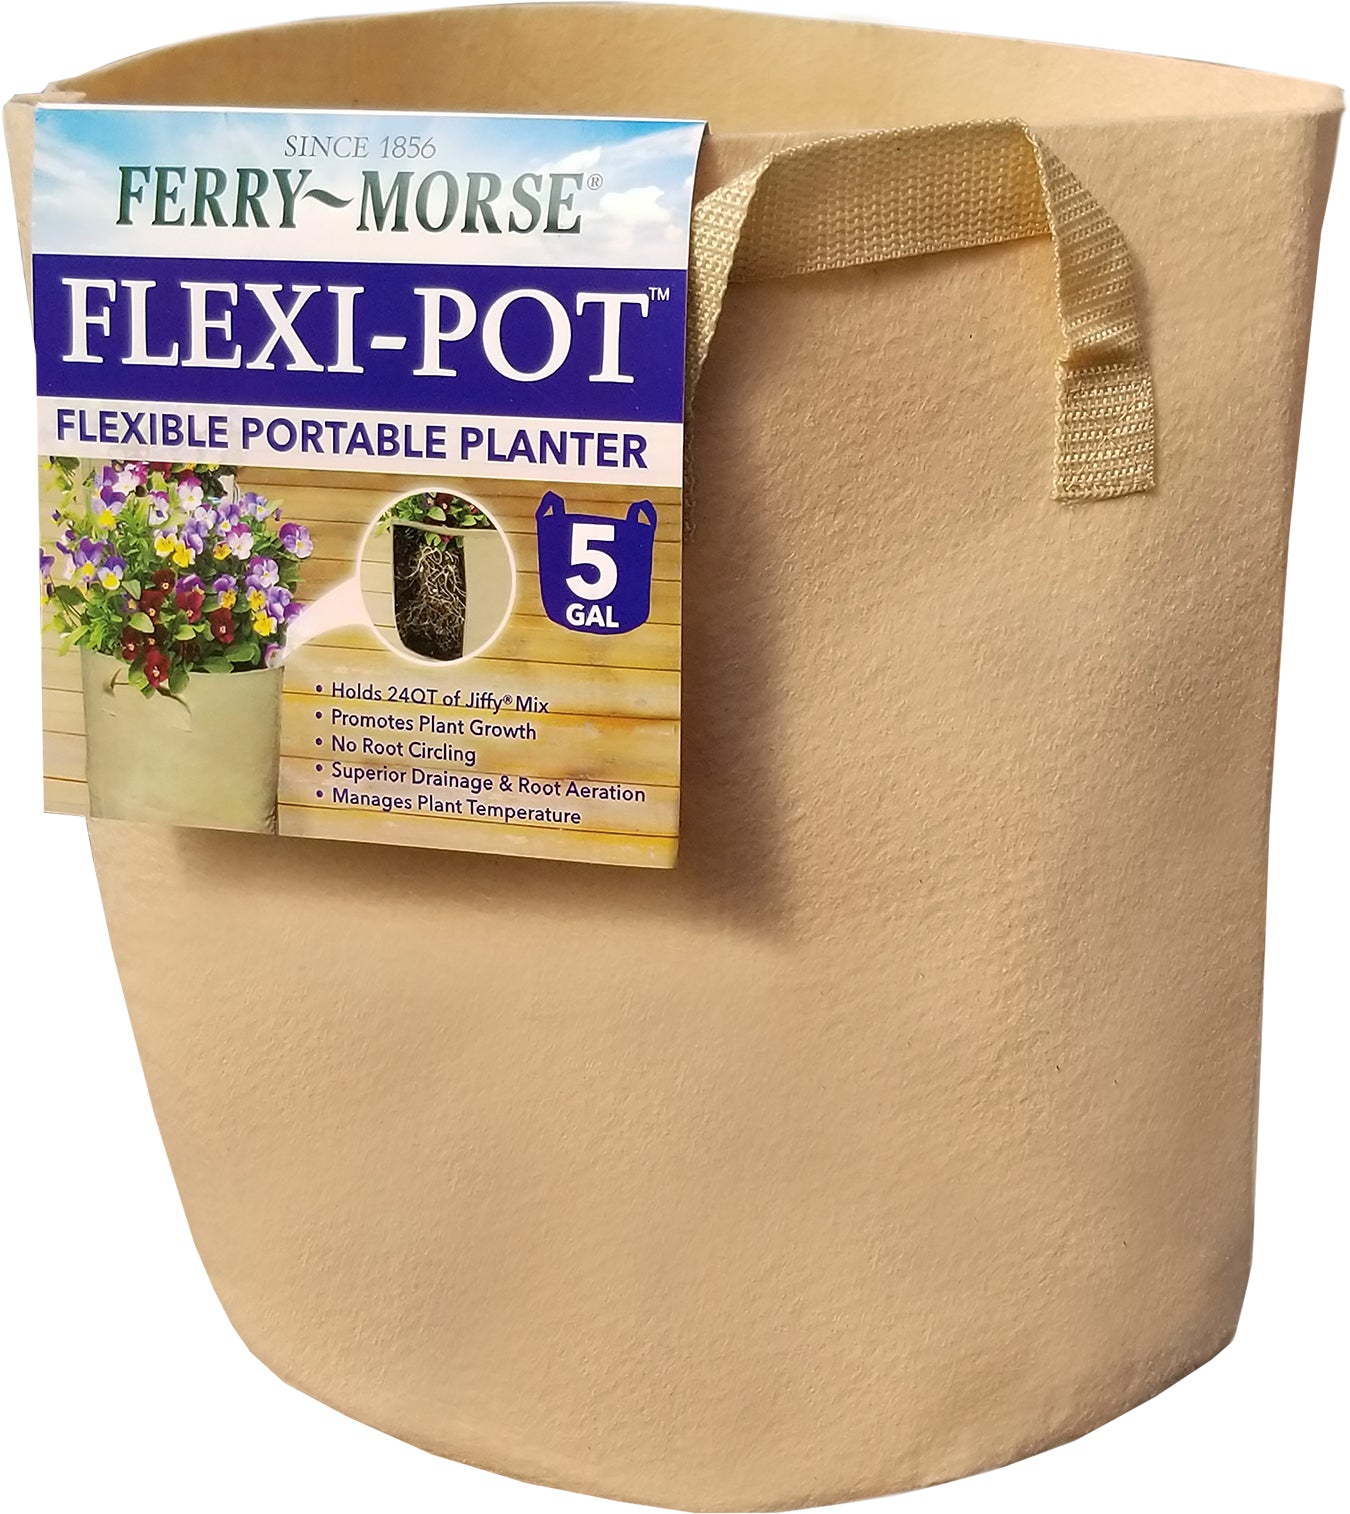 Ferry-Morse Flexi Pot 5 Gallon Flexible Portable Planter with Handles